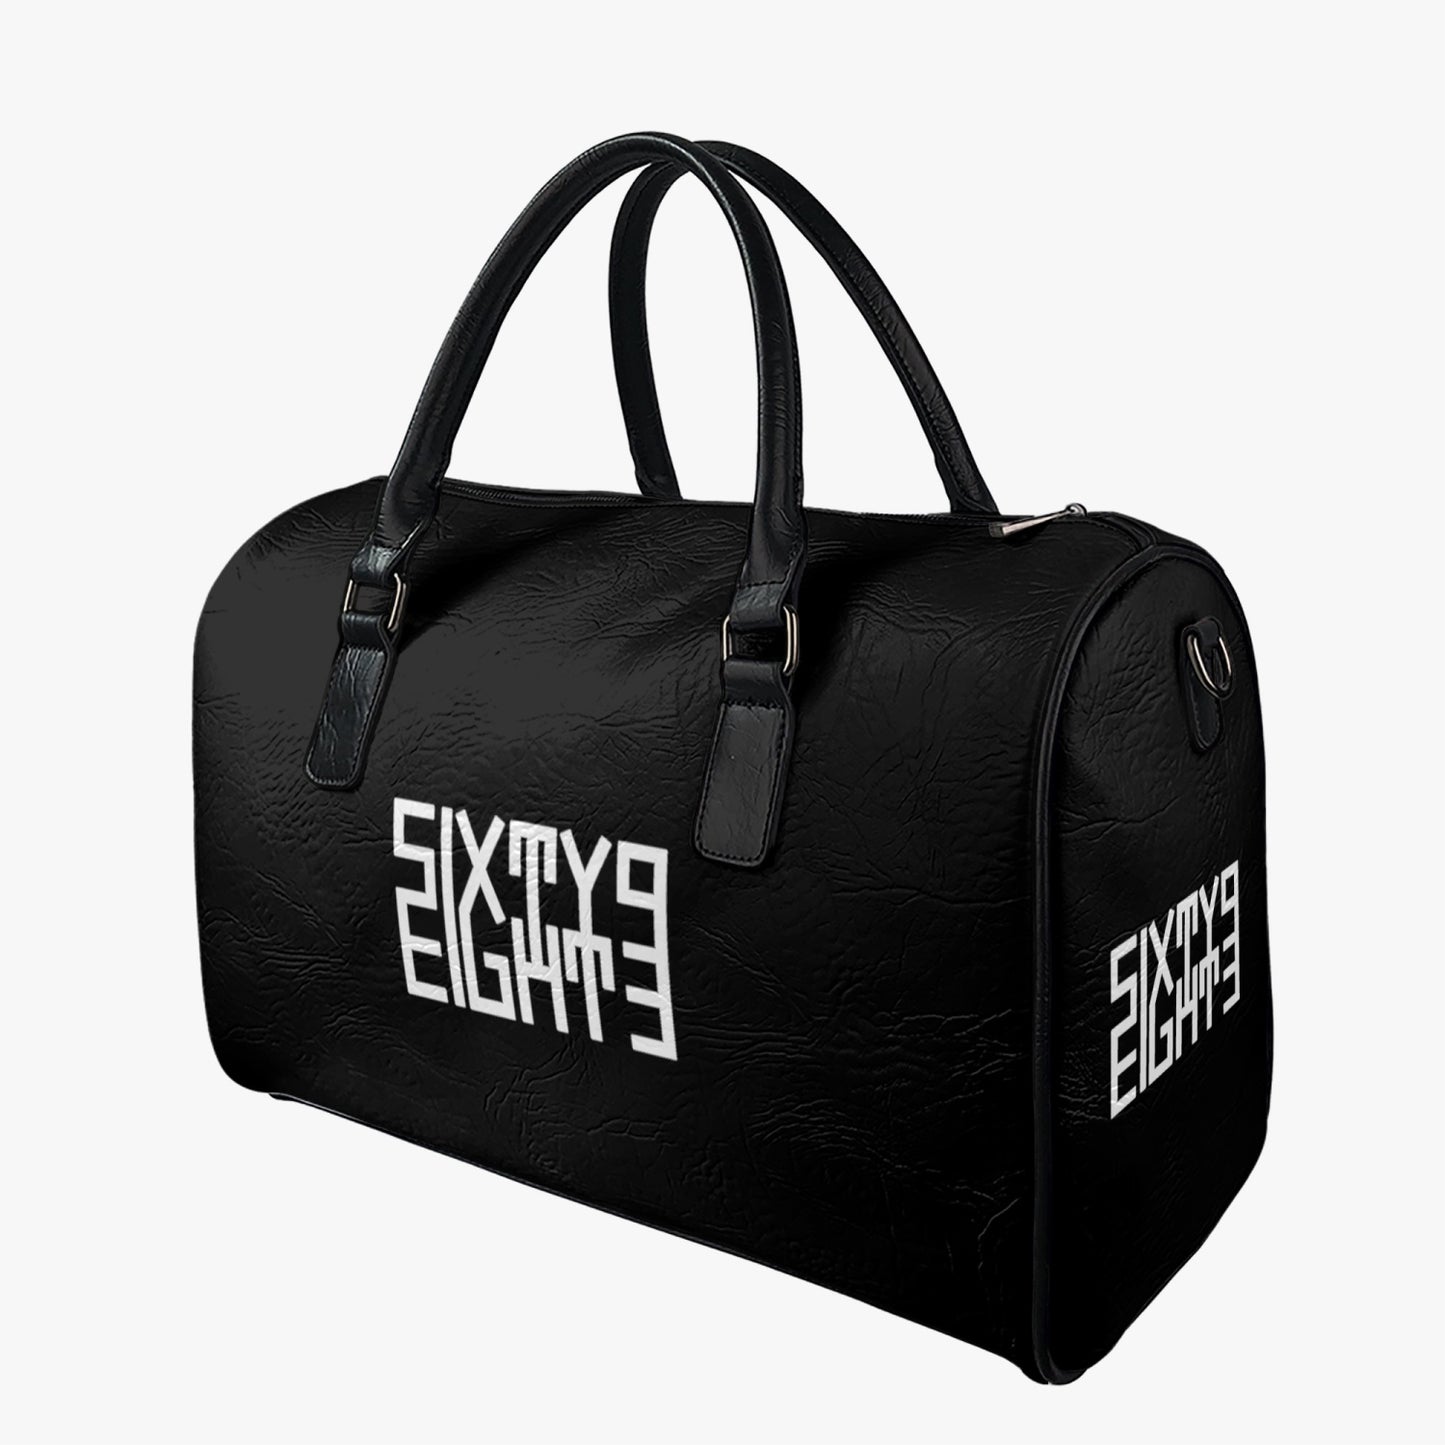 Sixty Eight 93 Logo White Black Leather Portable Travel Bag